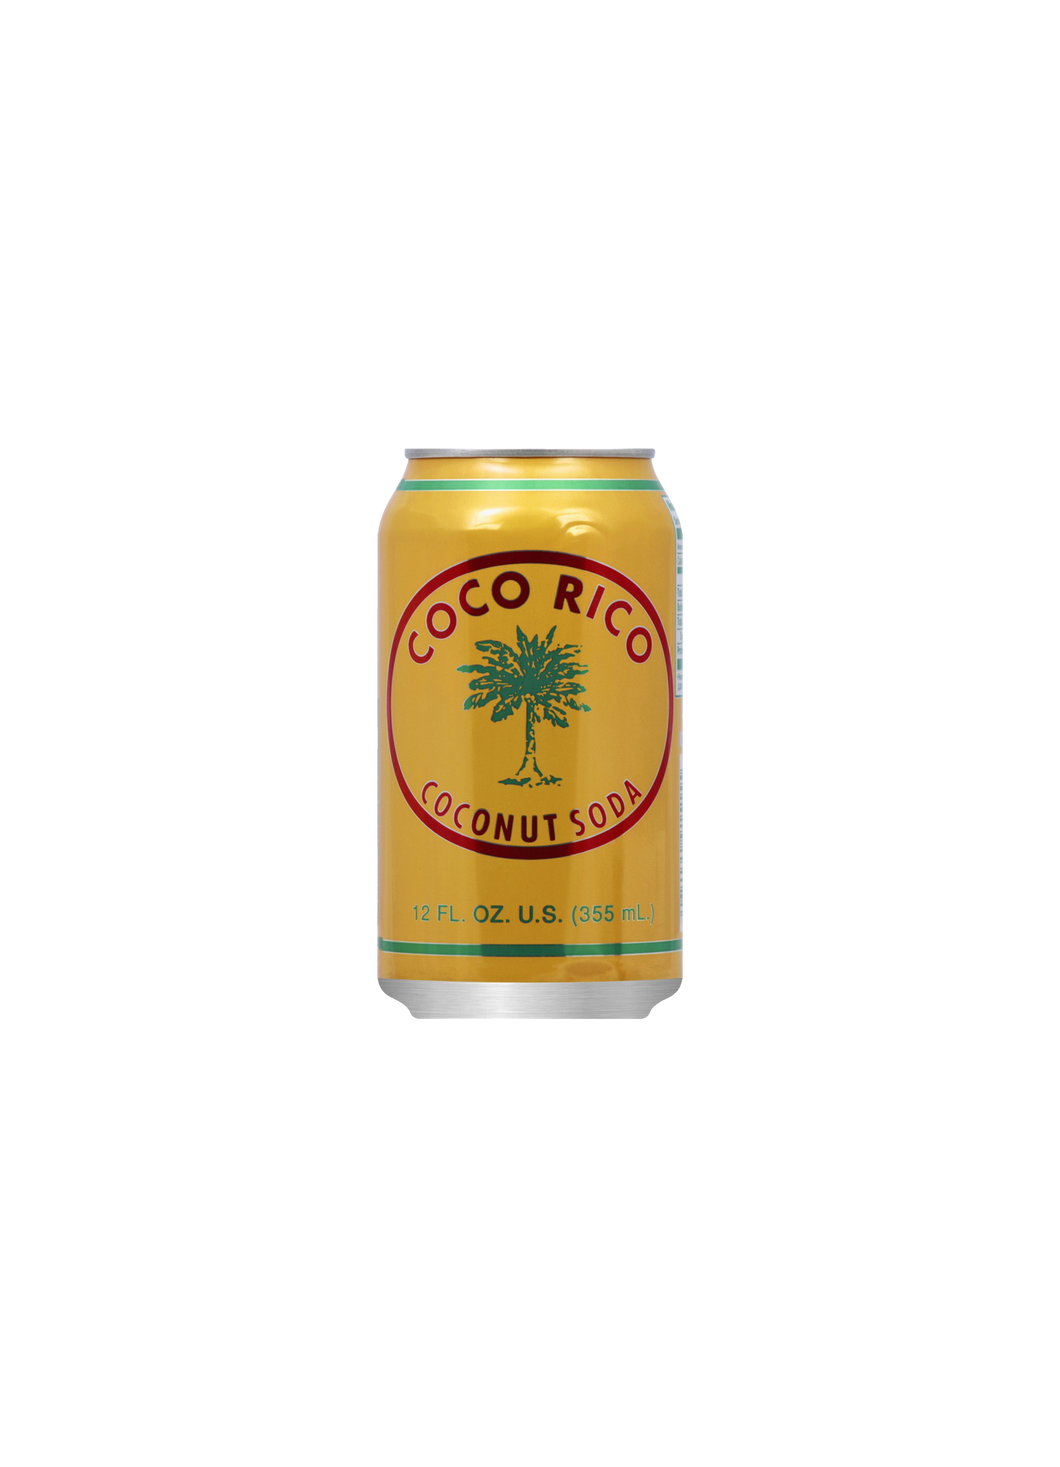 Coco Rico Coconut Soda 355ml